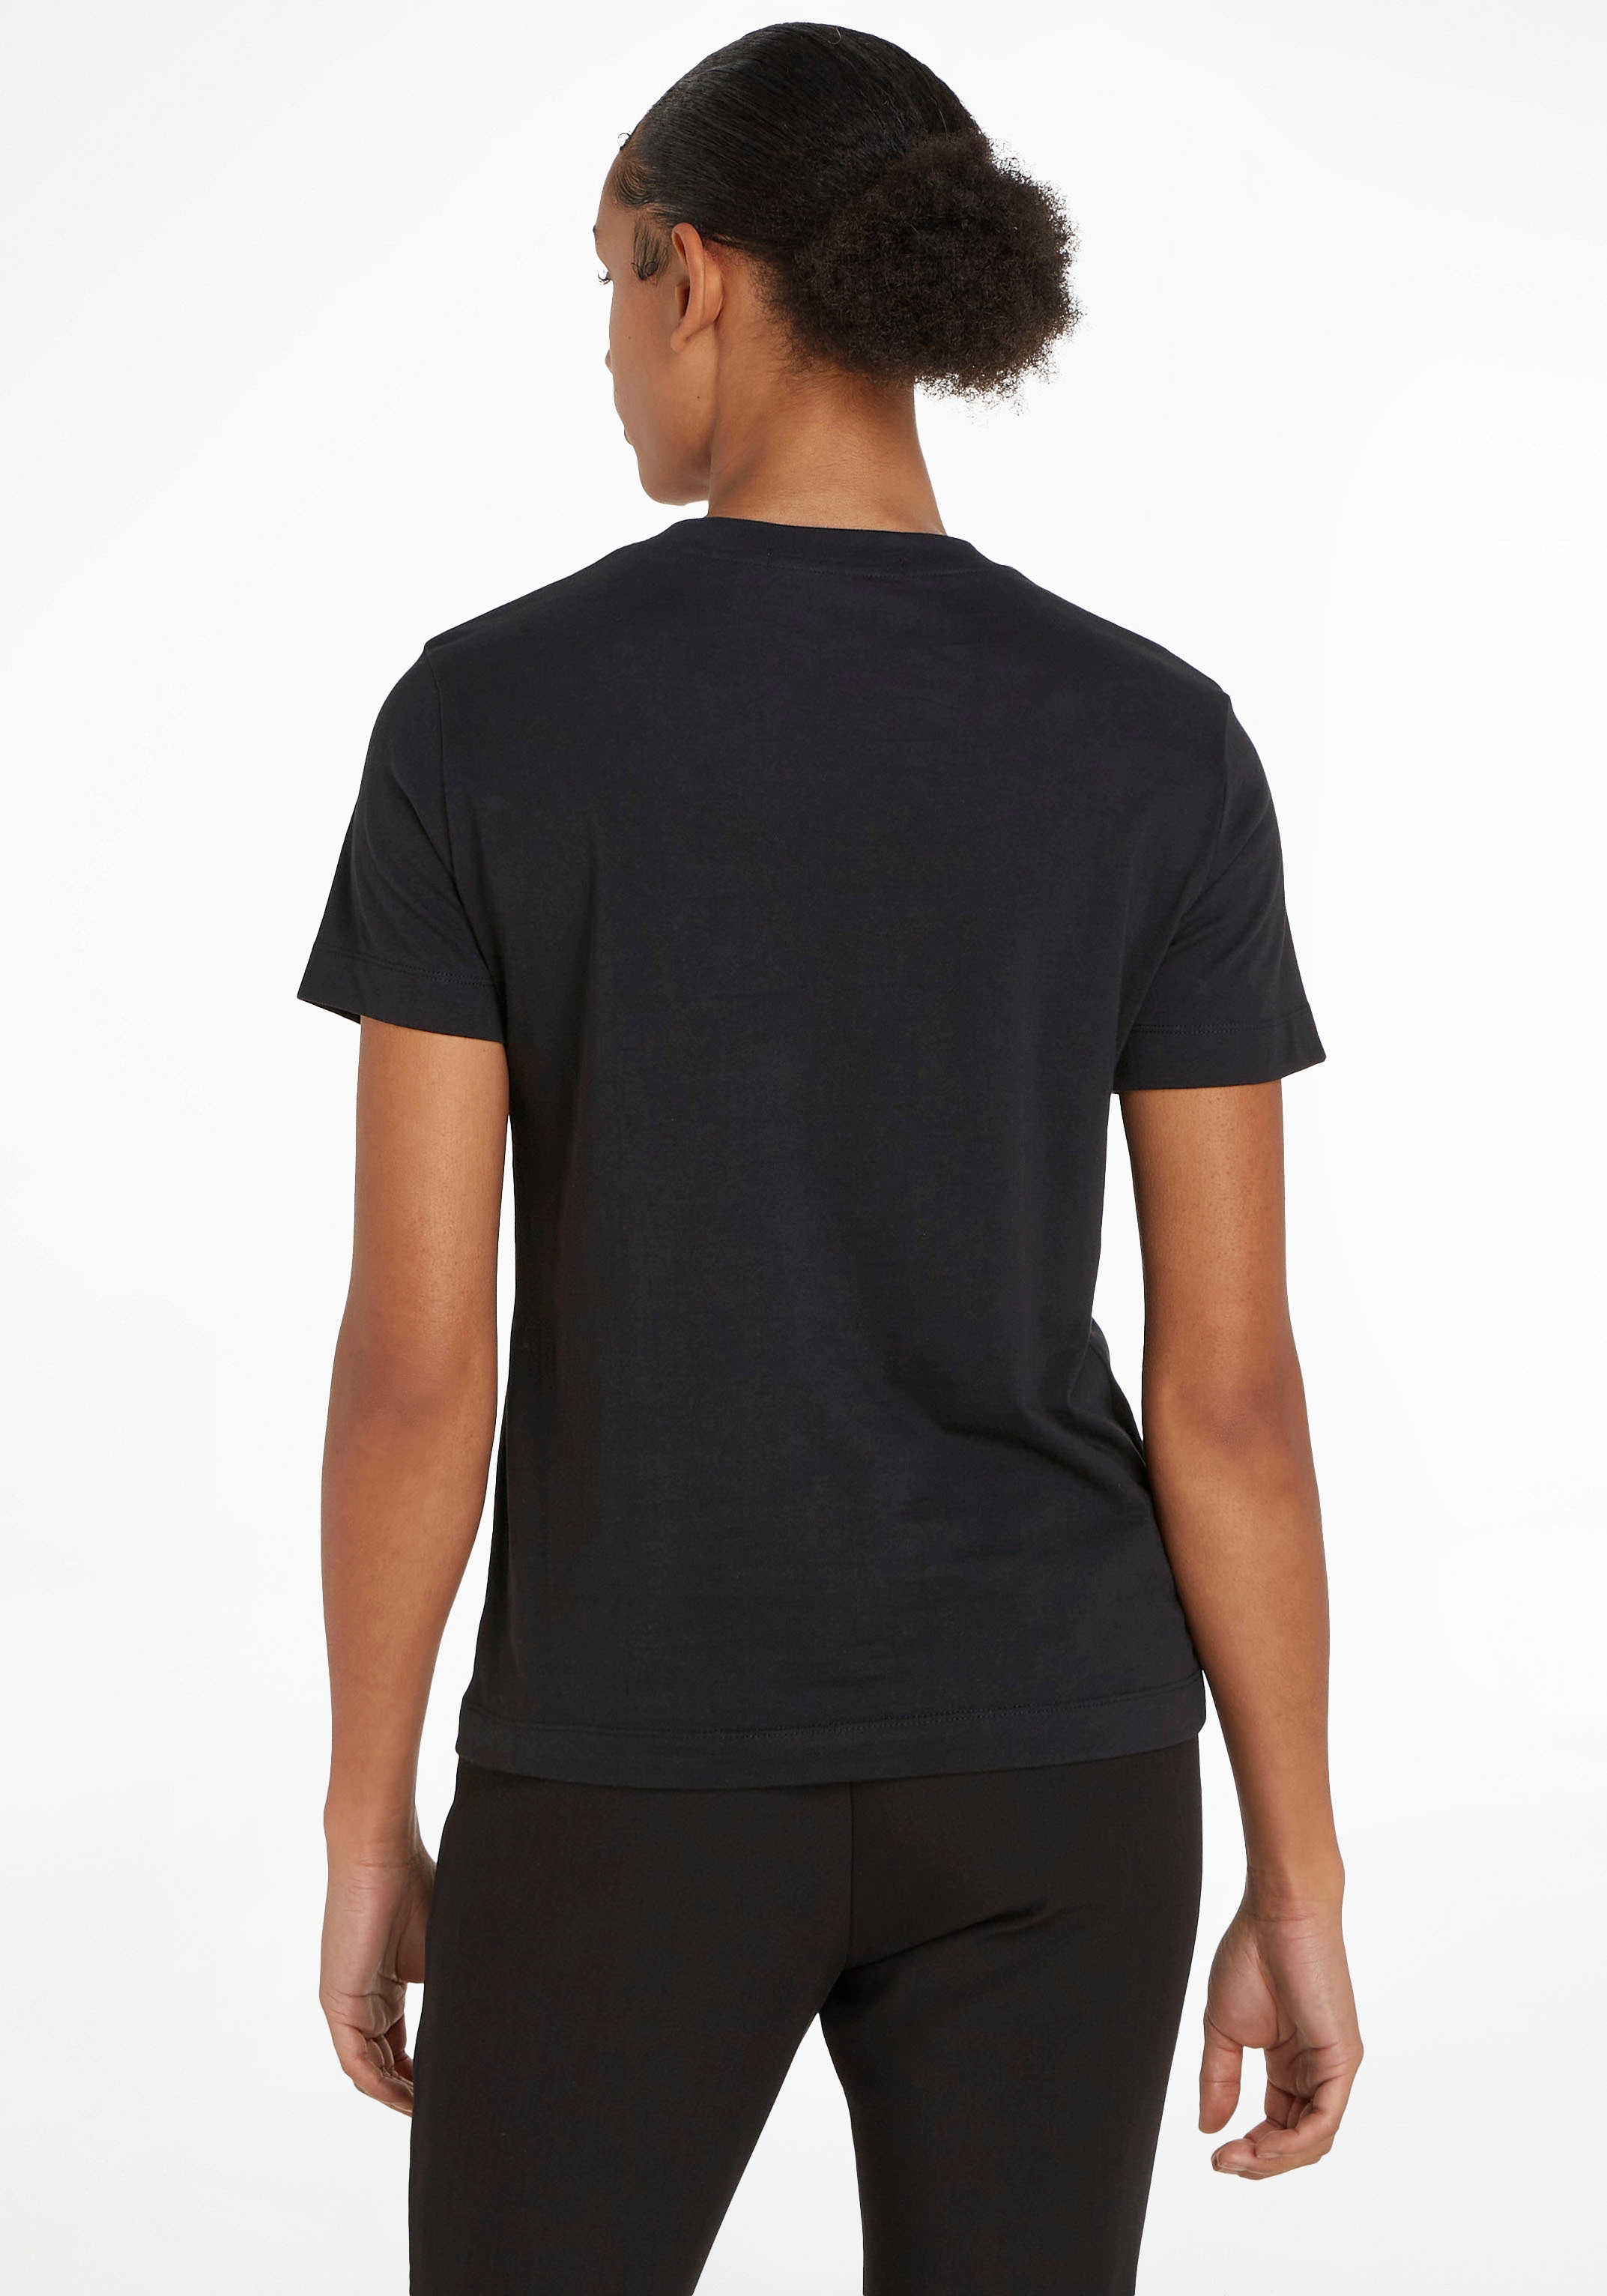 Black Friday Calvin Klein Jeans T-Shirt »STACKED LOGO MODERN STRAIGHT TEE«, mit  dezentem Calvin Klein Jeans Logodruck | BAUR